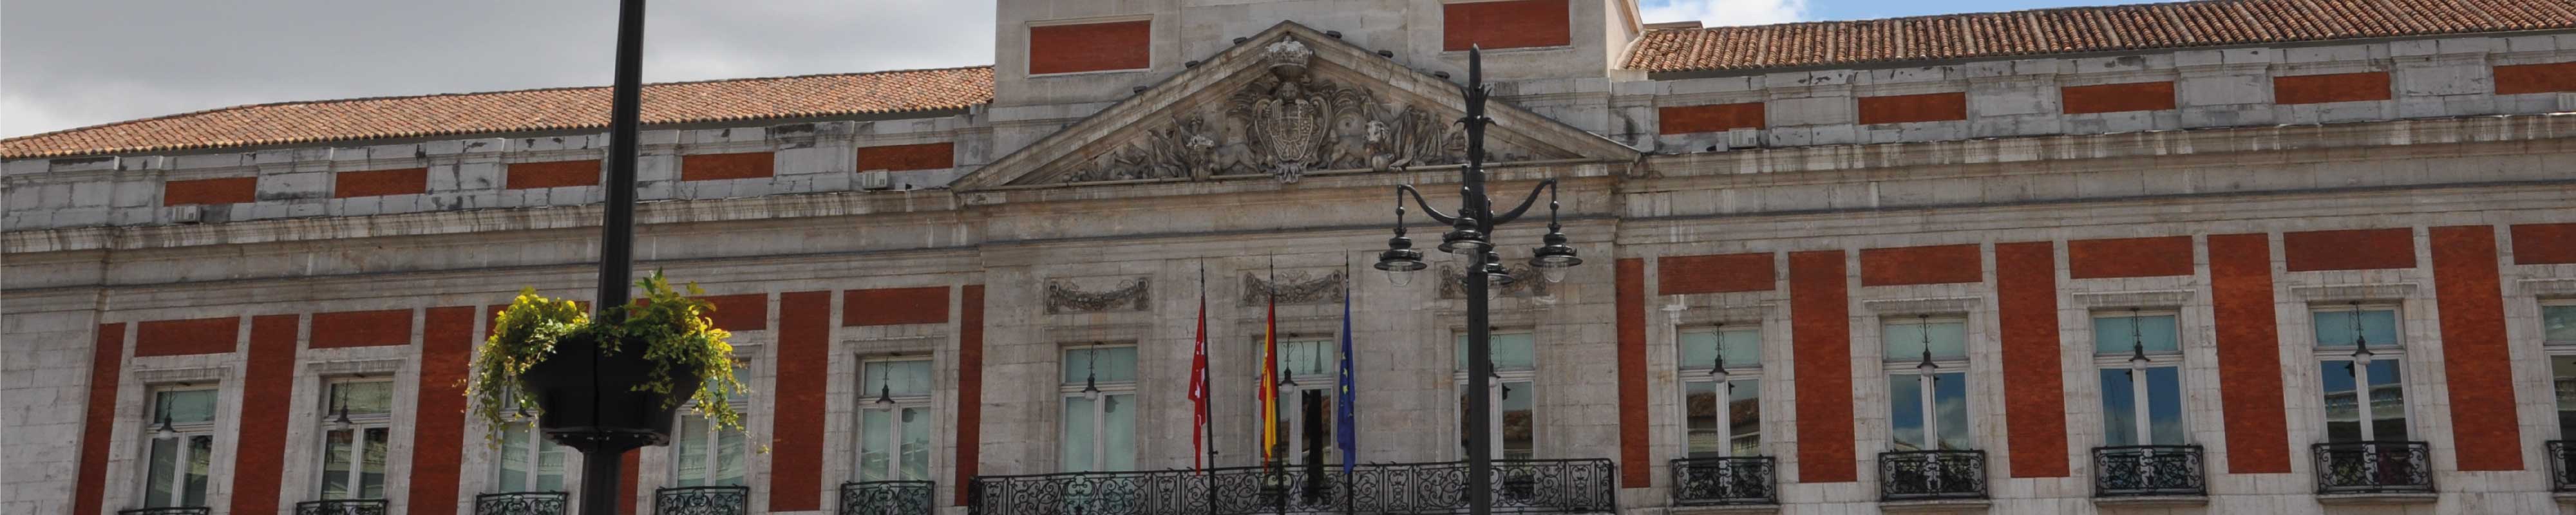 行李寄存 | Puerta del Sol in Madrid - Nannybag